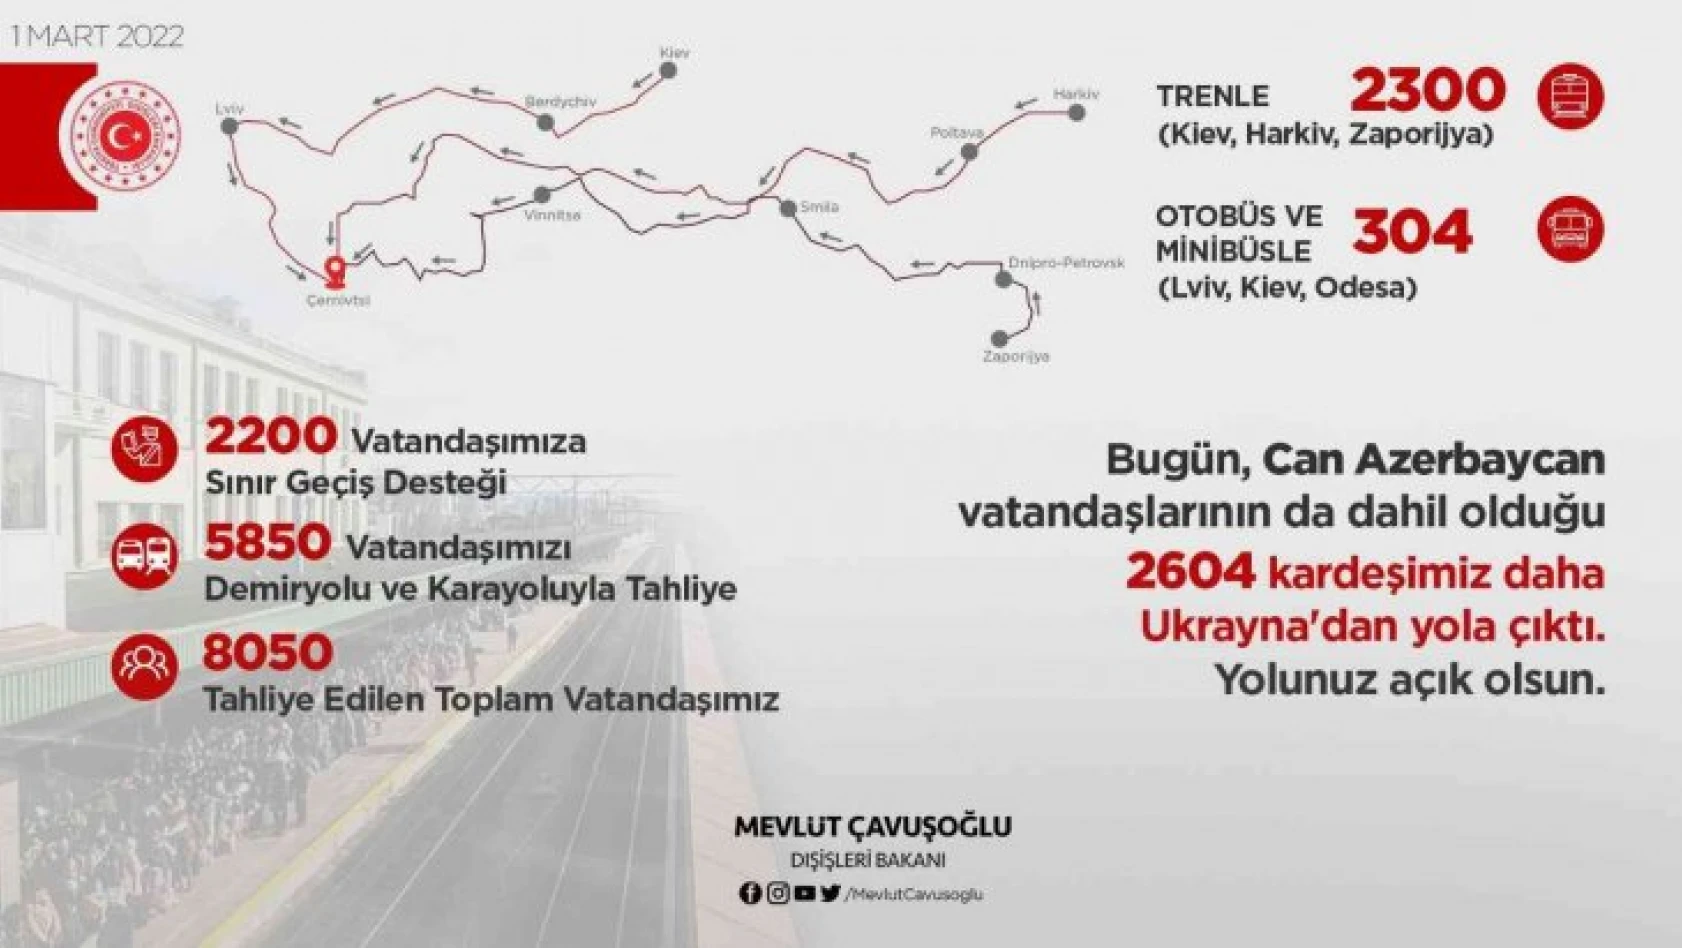 Çavuşoğlu, '2 bin 604 kardeşimiz daha yola çıktı'